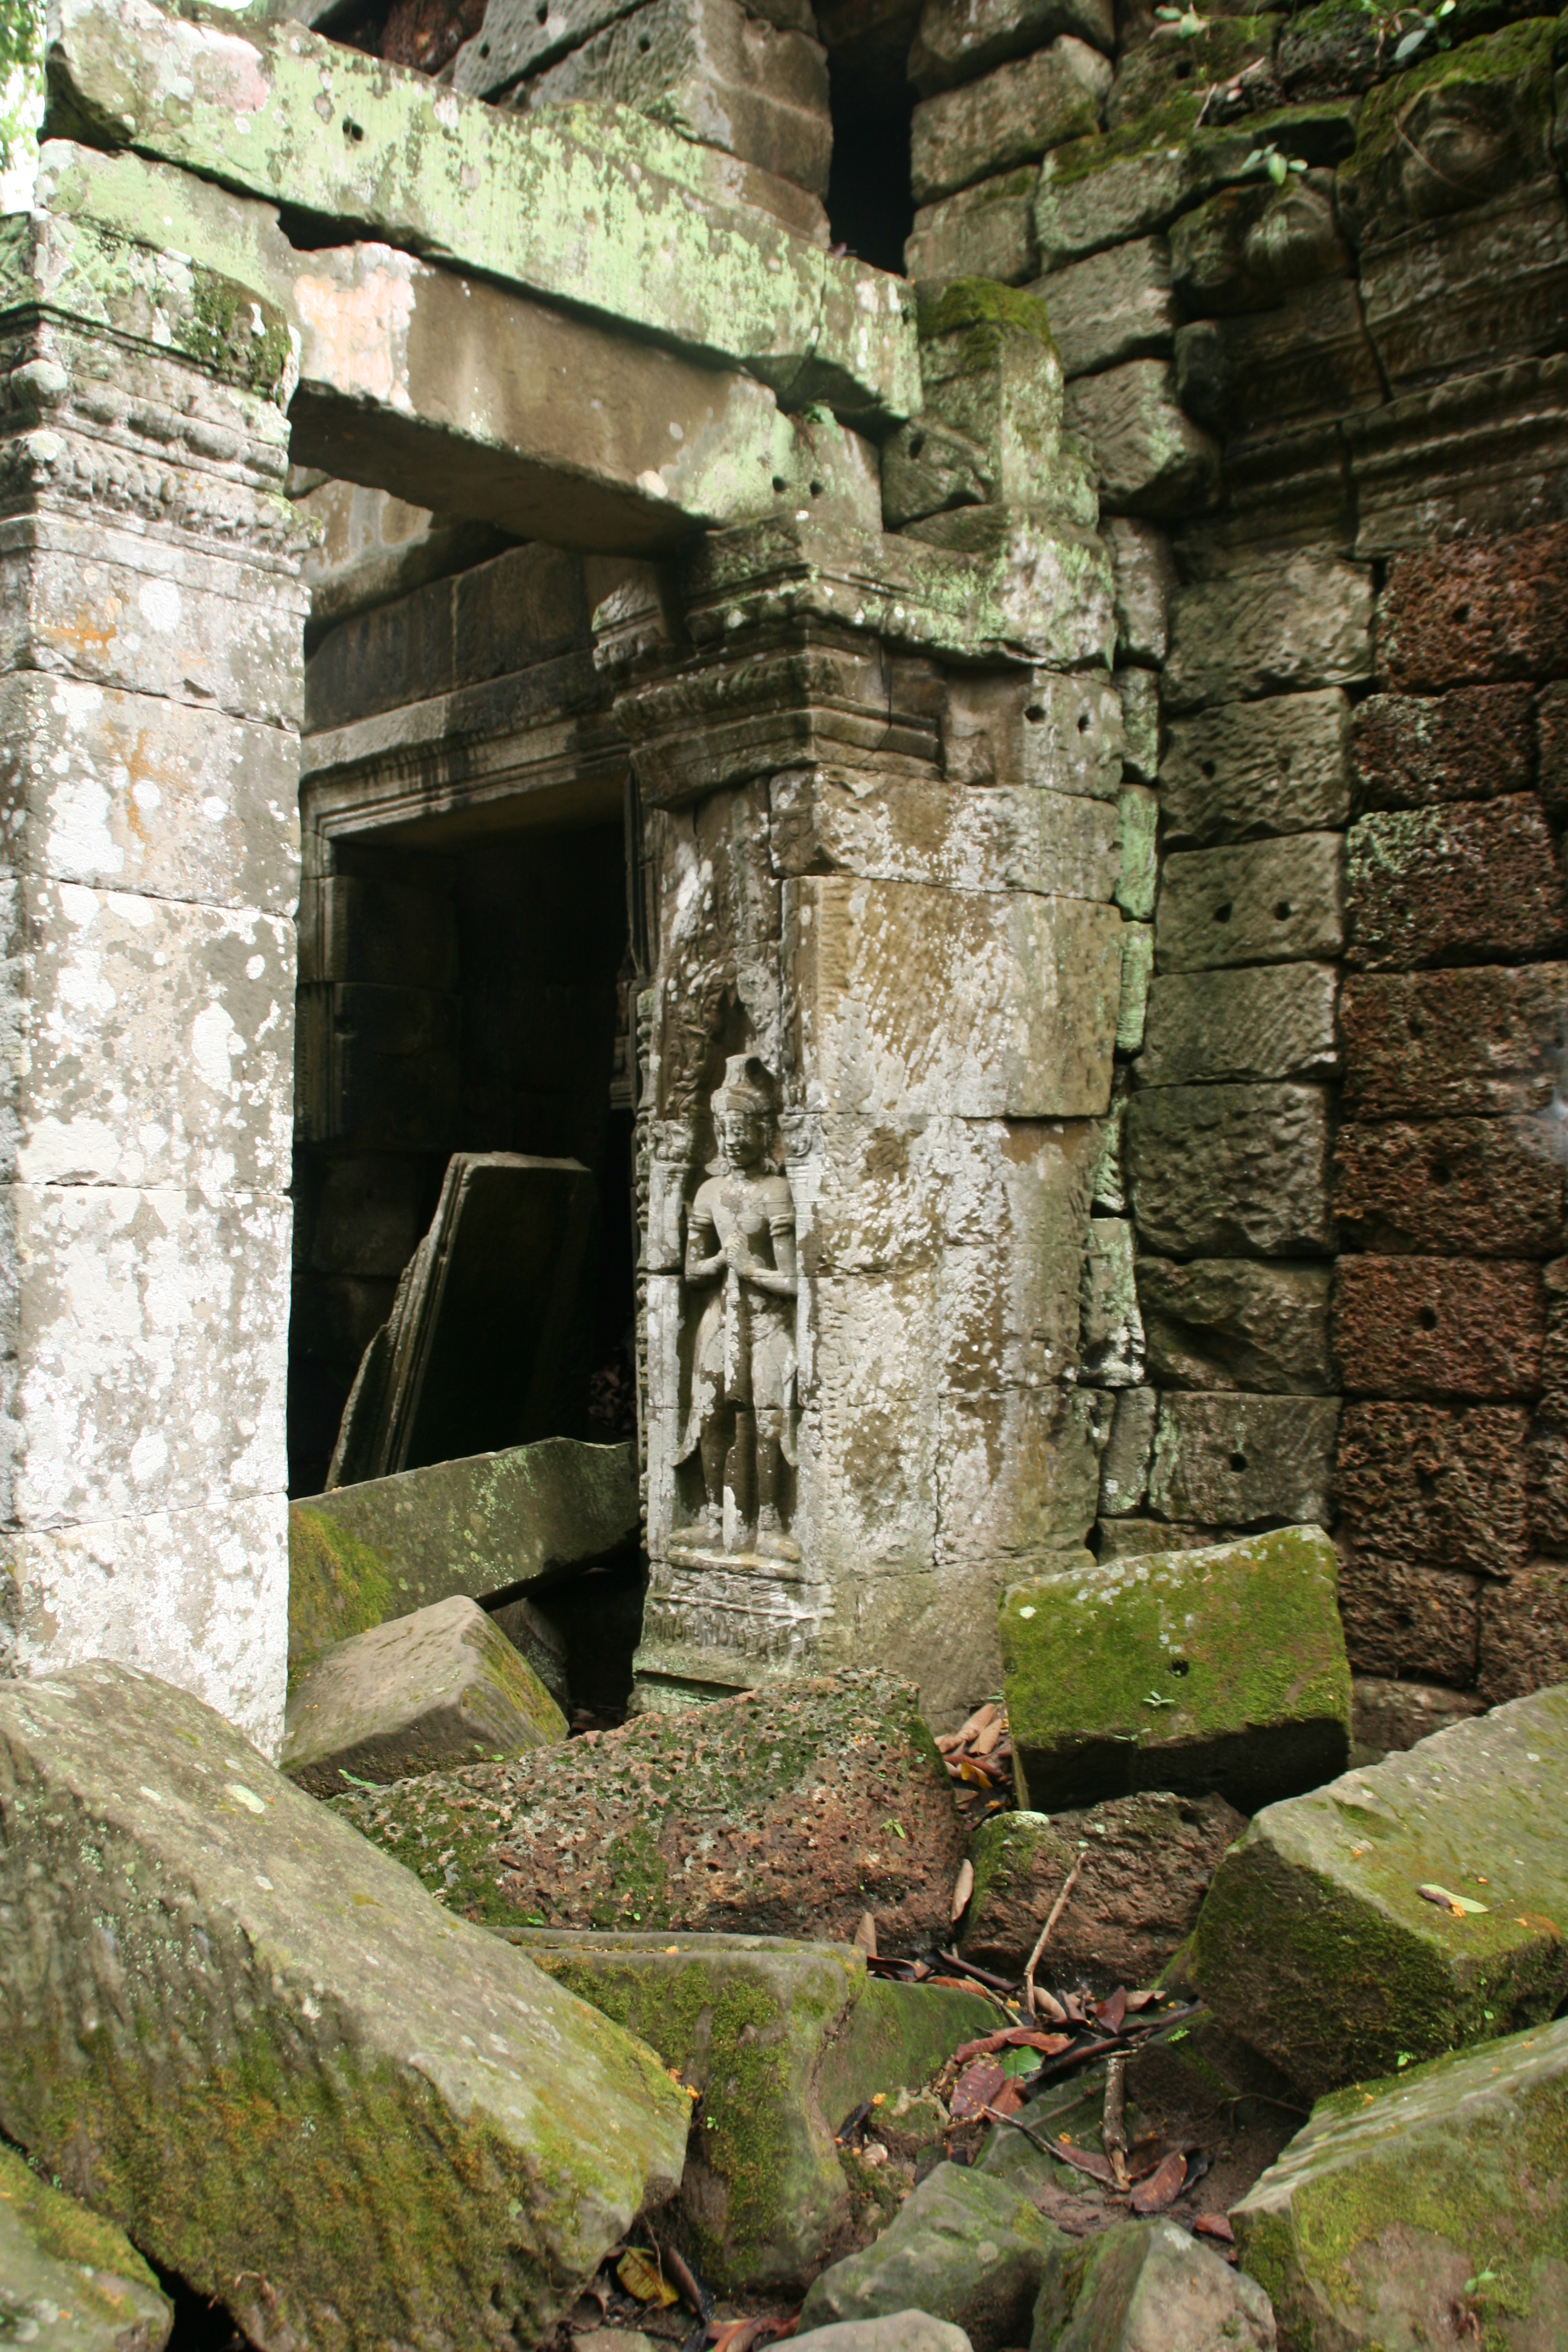 Temple ruins in Cambodia